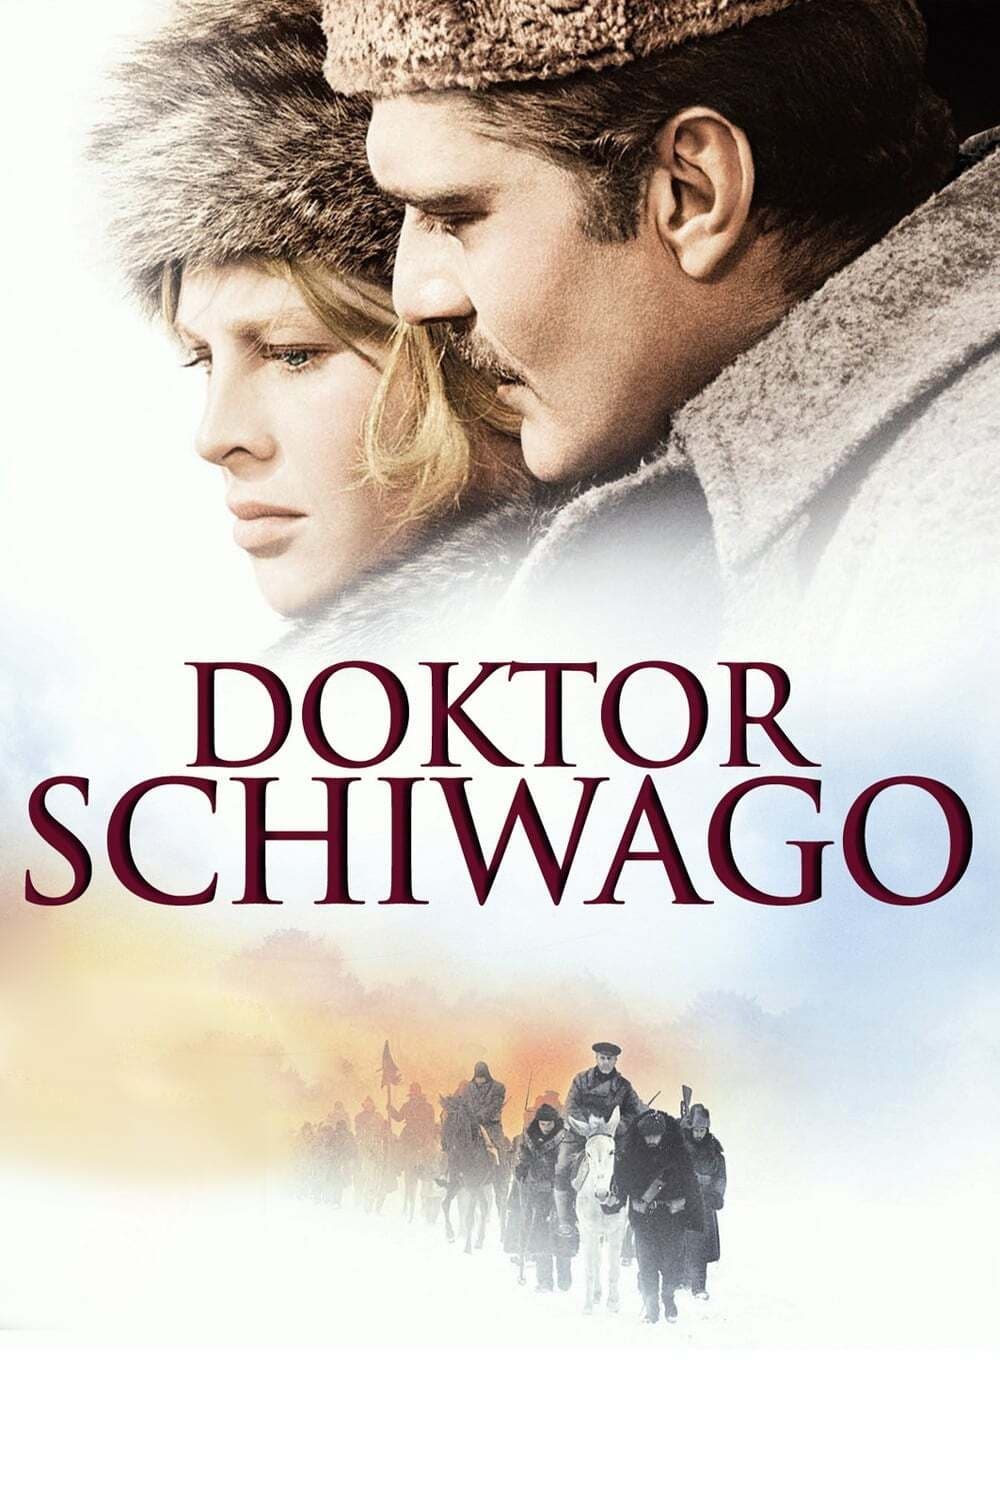 Poster Doktor Schiwago